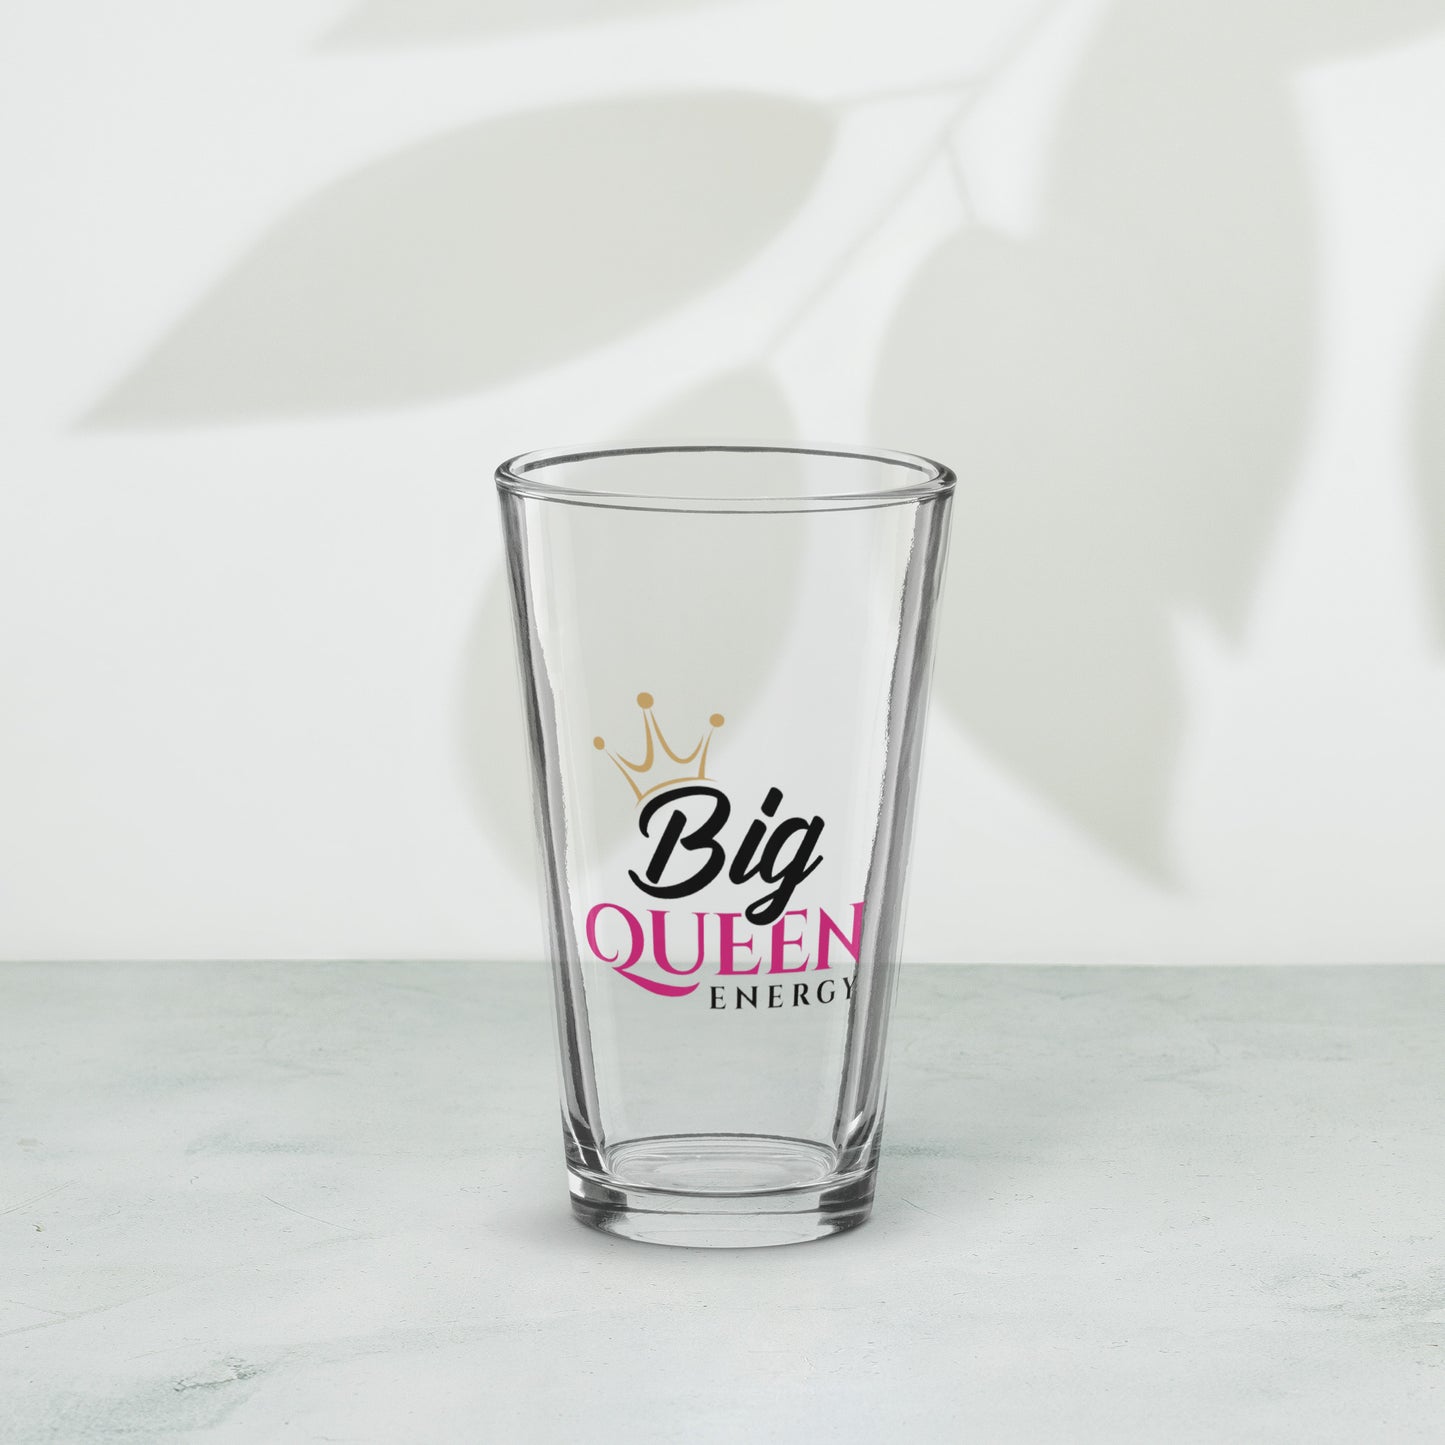 Big Queen Energy pint glass